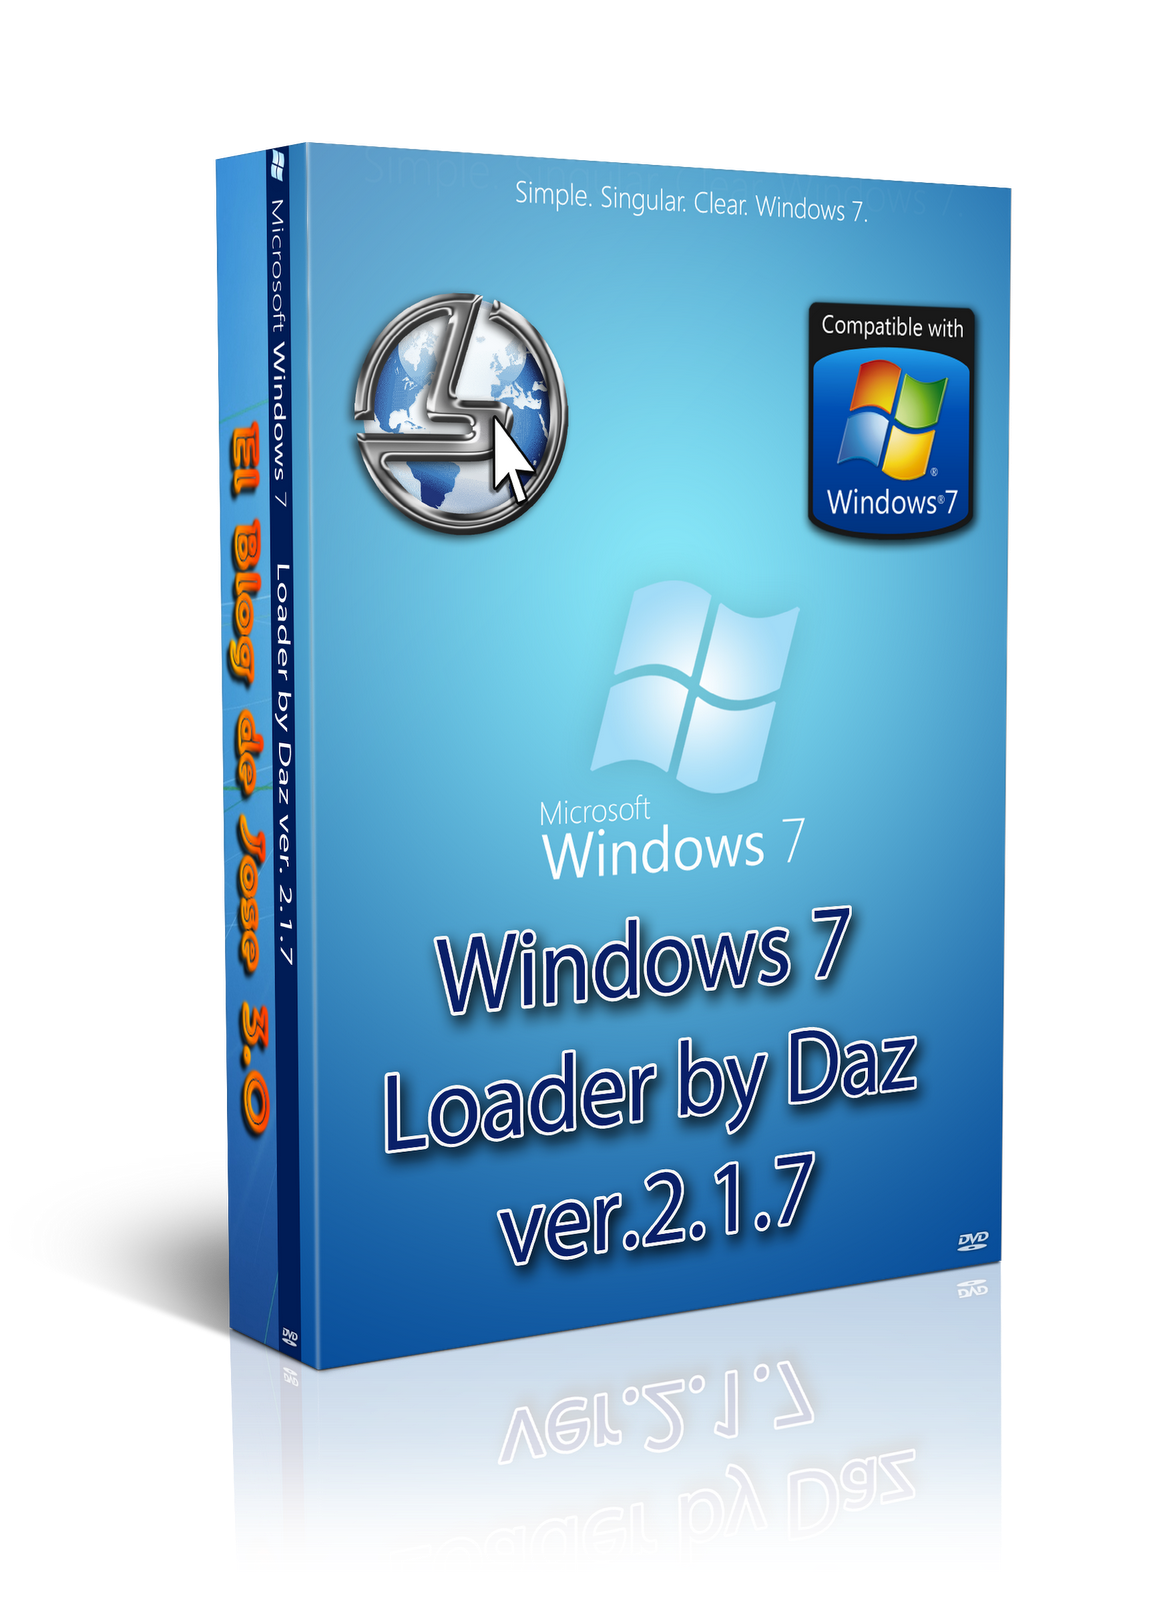 Активатор daz. Виндовс лоадер. Windows 7 Loader by Daz. Активатор Windows 7 Loader by Daz. Win 7 активатор Daz.